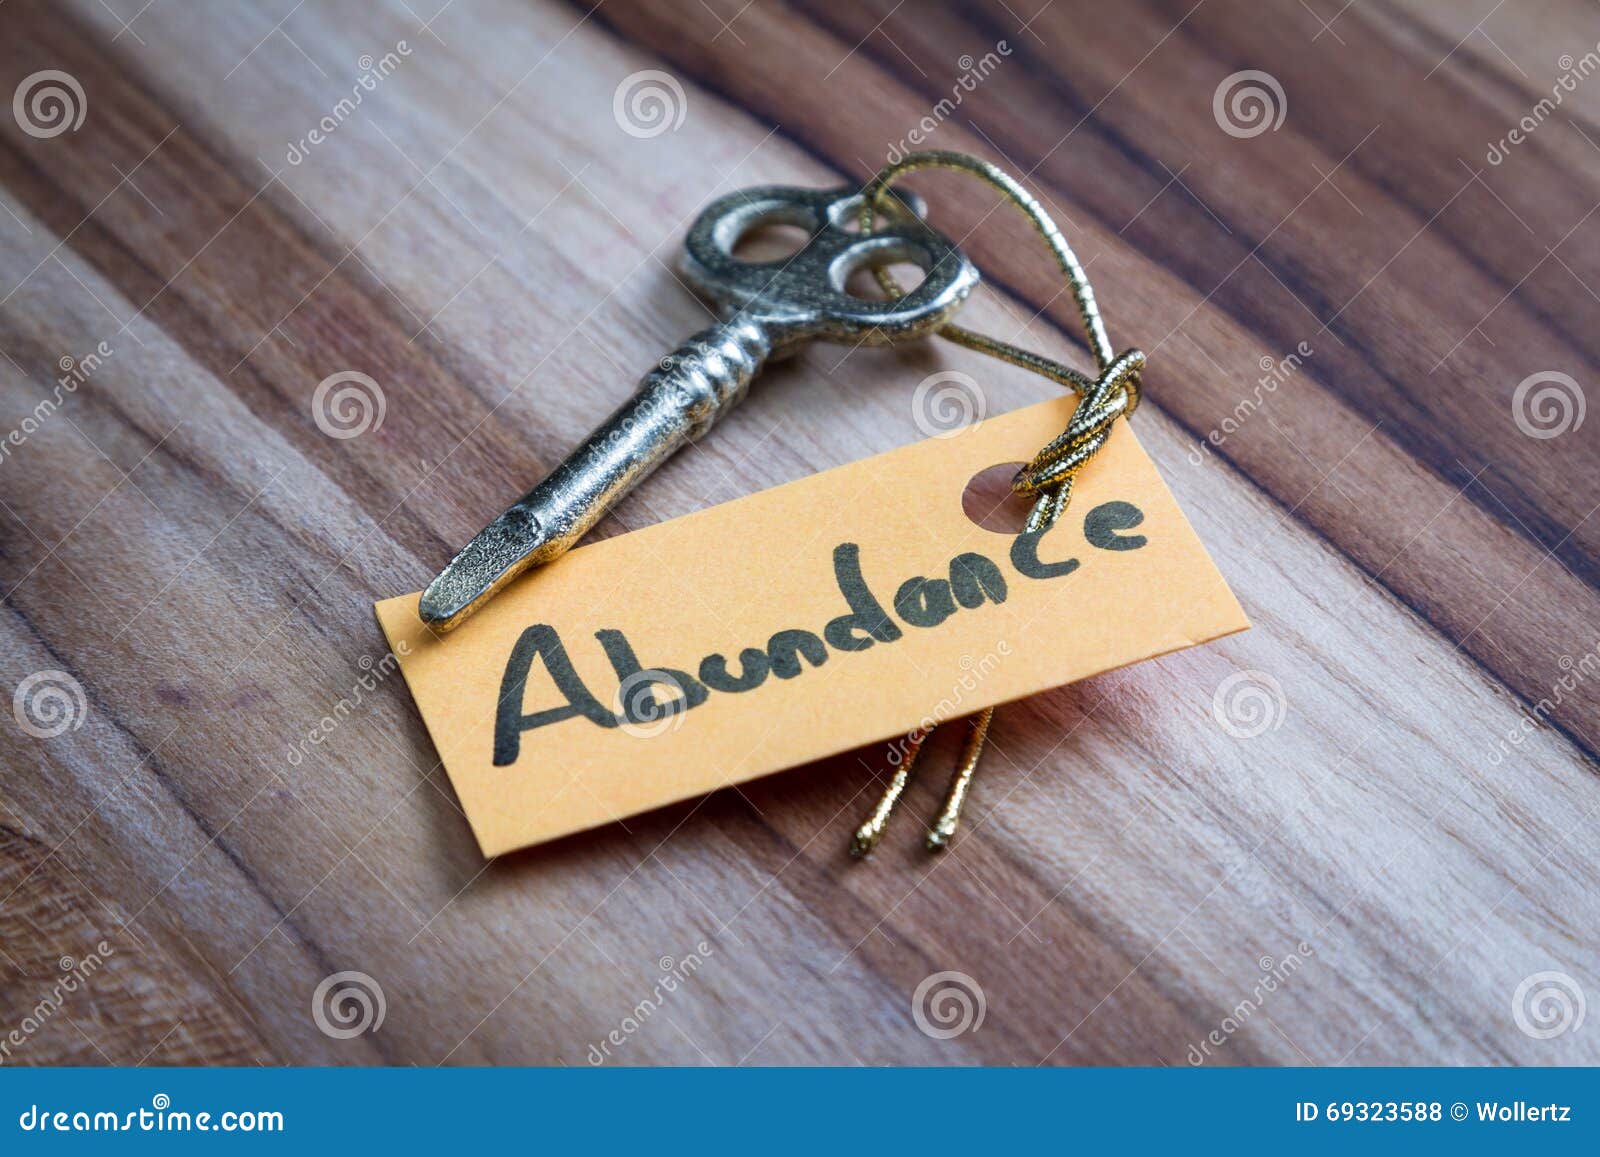 secret key for abundance in life